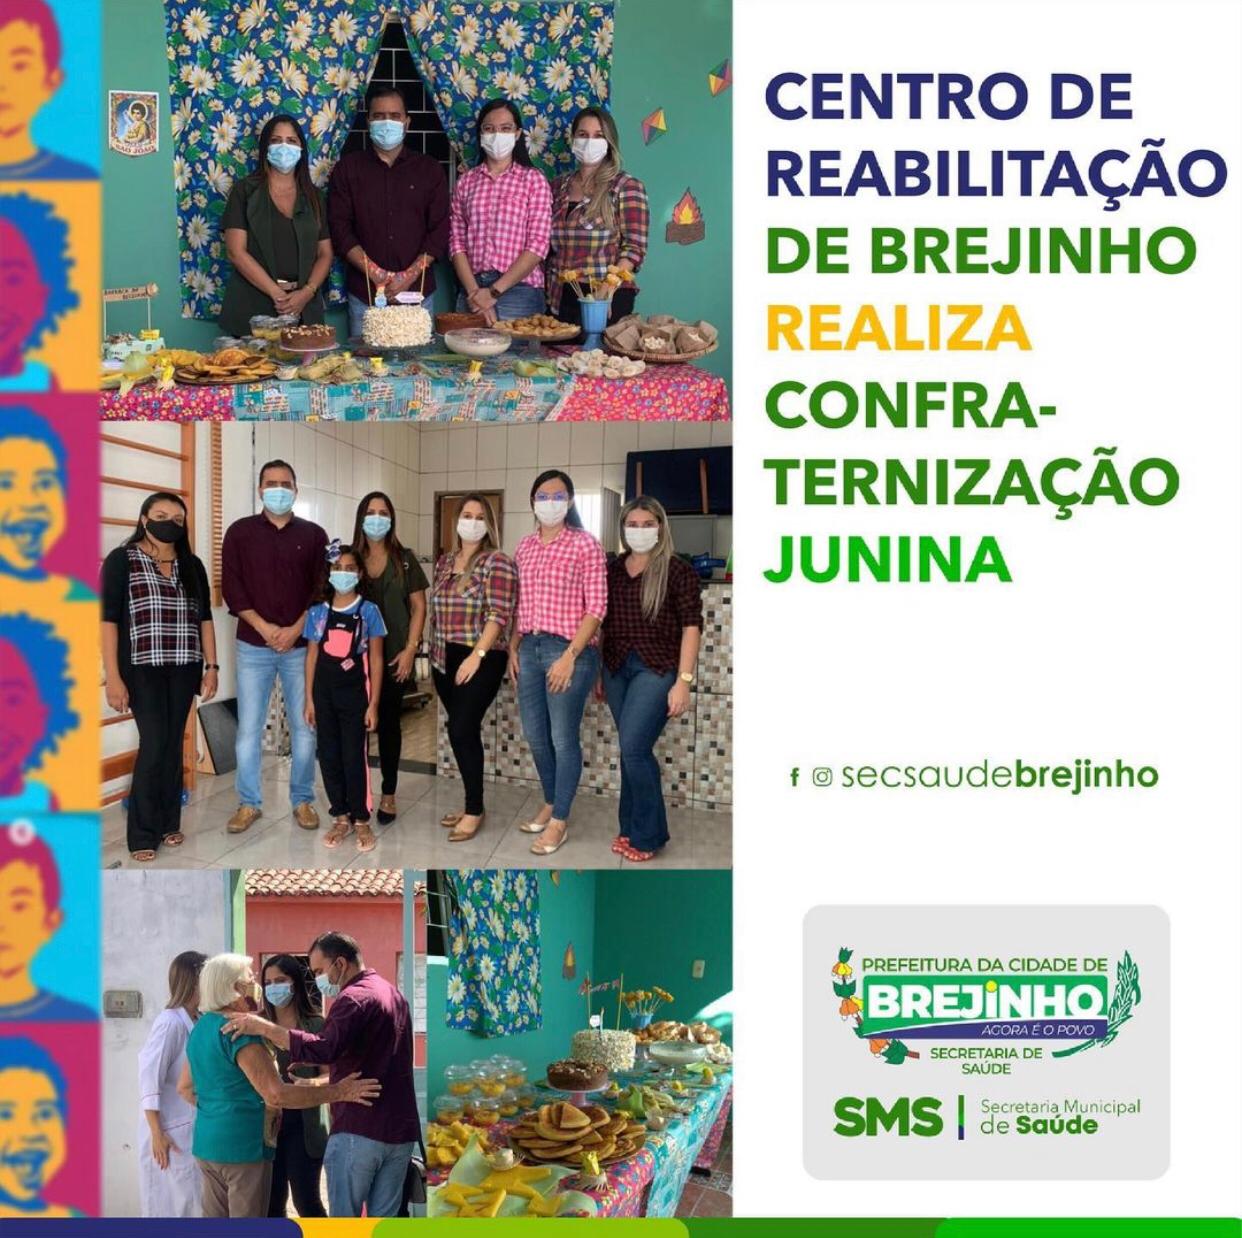 Read more about the article Centro de reabilitação realizou confraternização junina em Brejinho